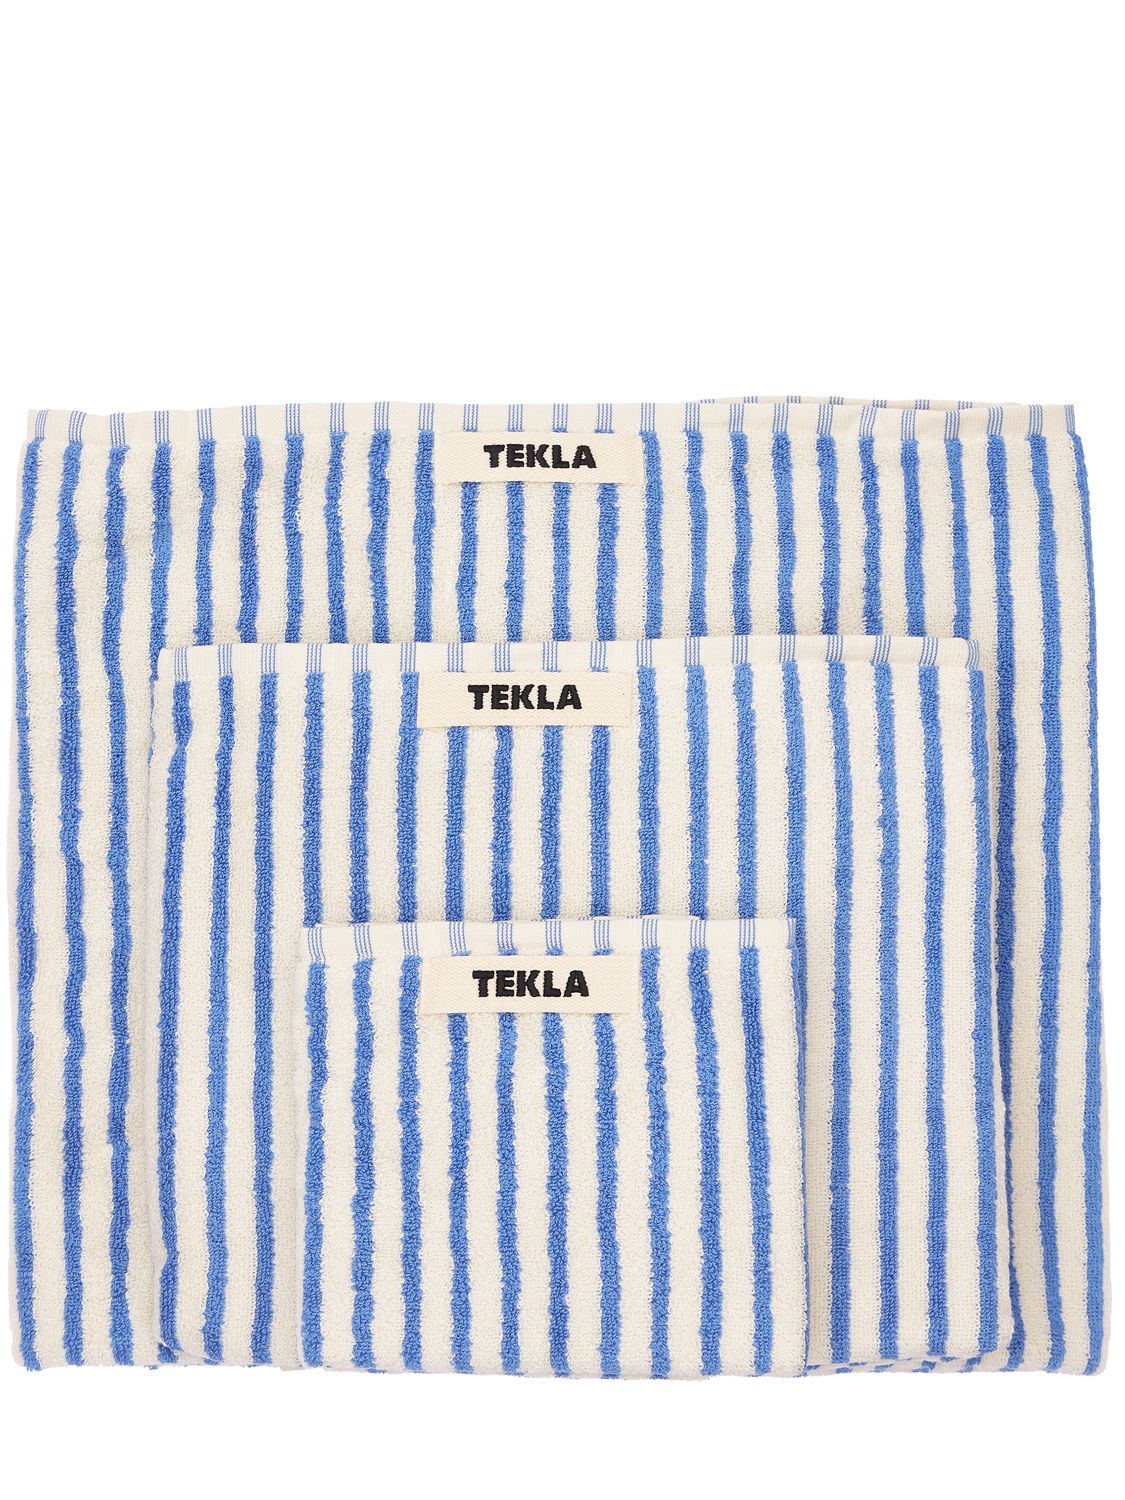 Tekla 有机棉毛巾3条套装 In White,blue